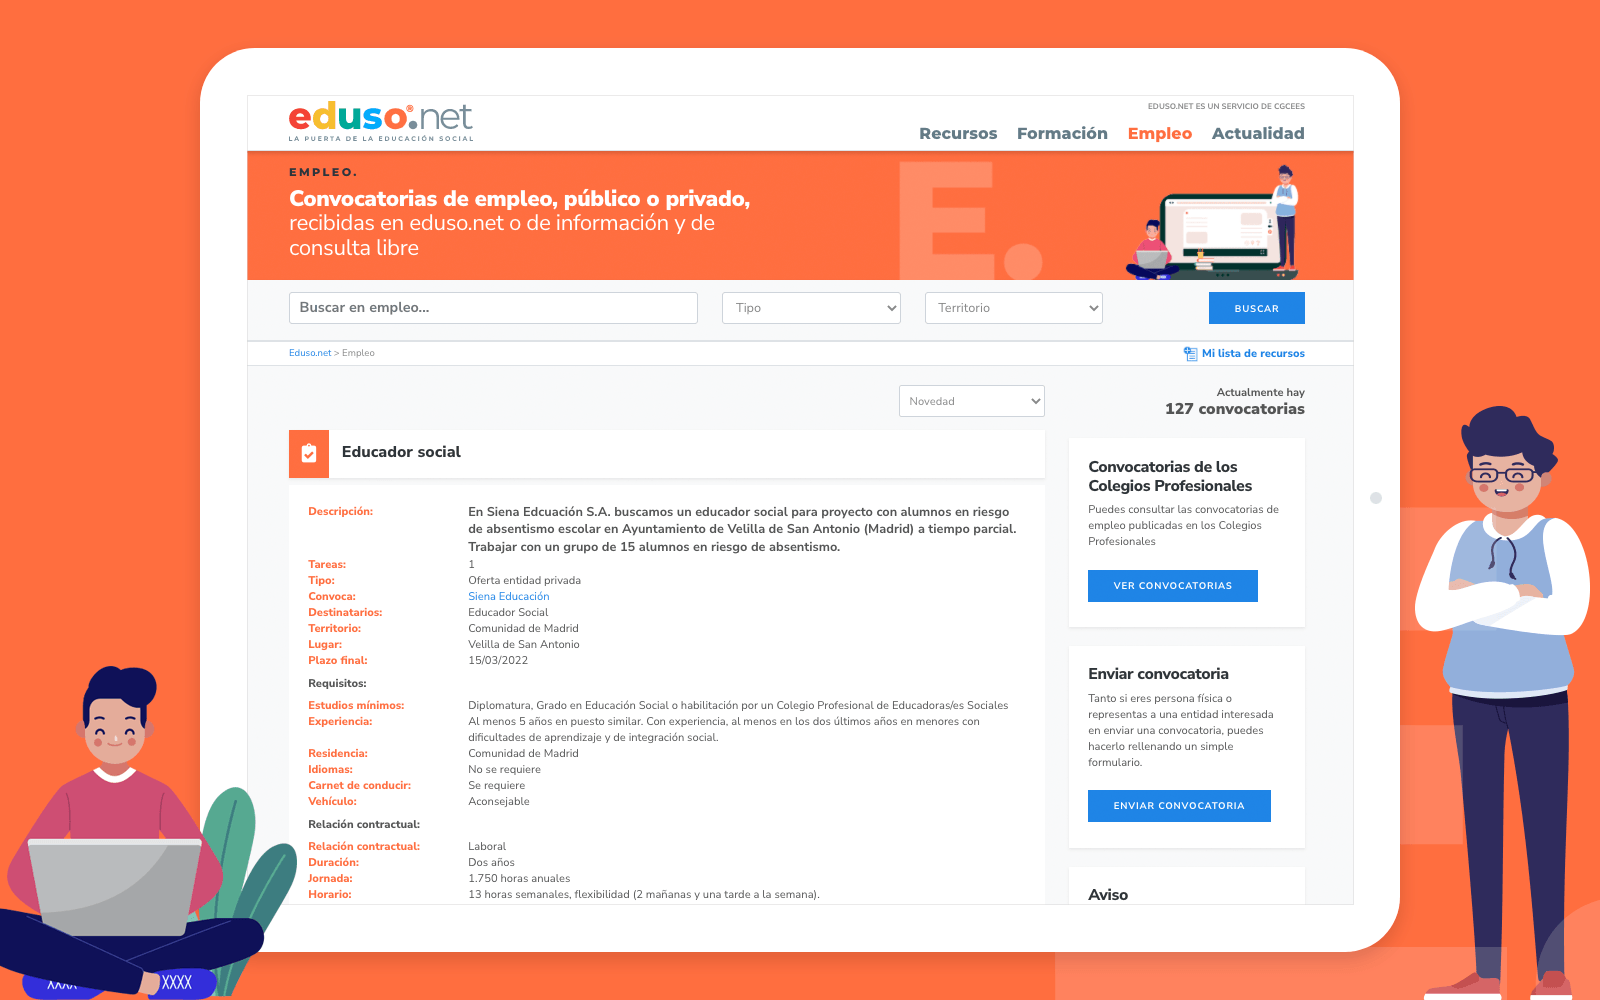 Diseño de pantalla del buscador de ofertas de trabajo de educación social de eduso.net